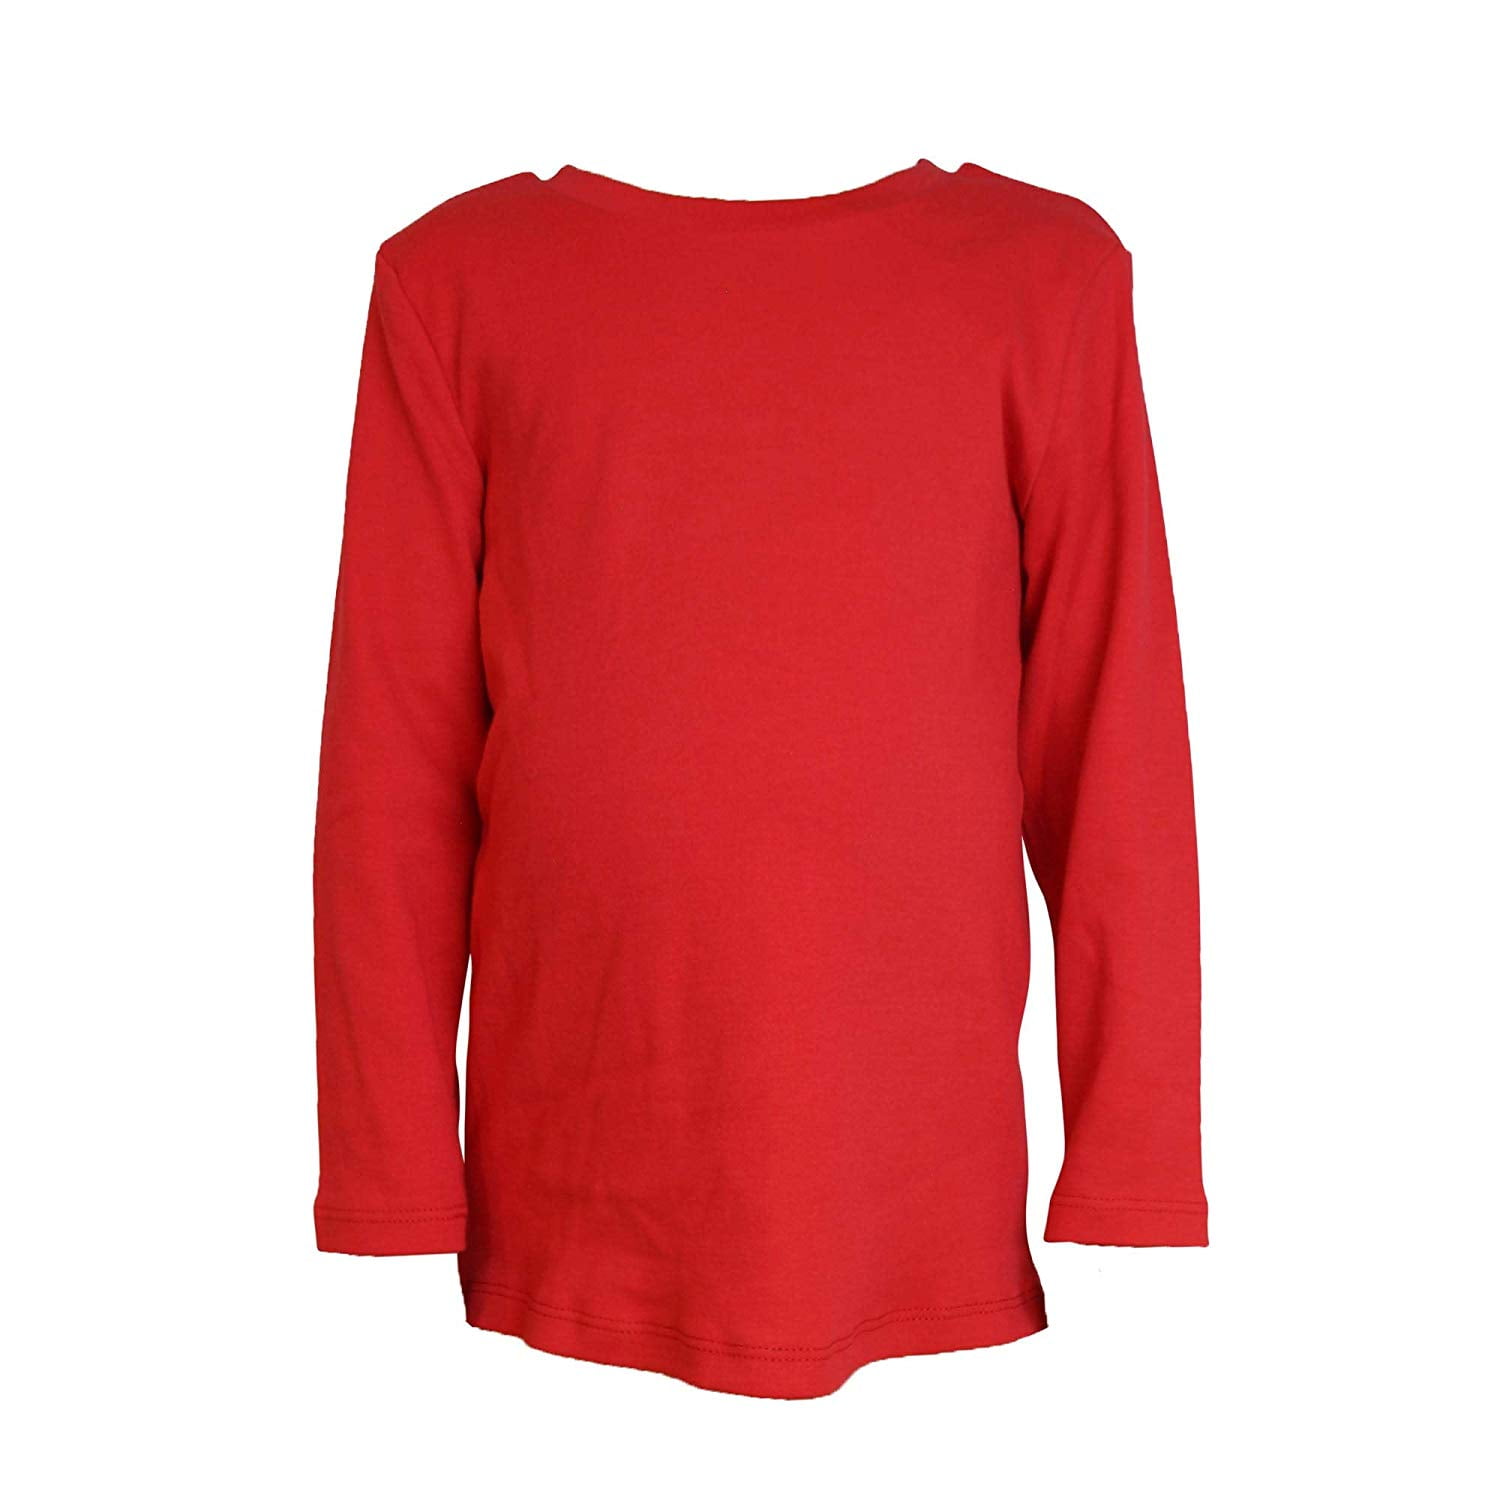 Kids Crew Neck Long Sleeve Plain Color Cotton Shirt, Red, 2T, 1 pc.